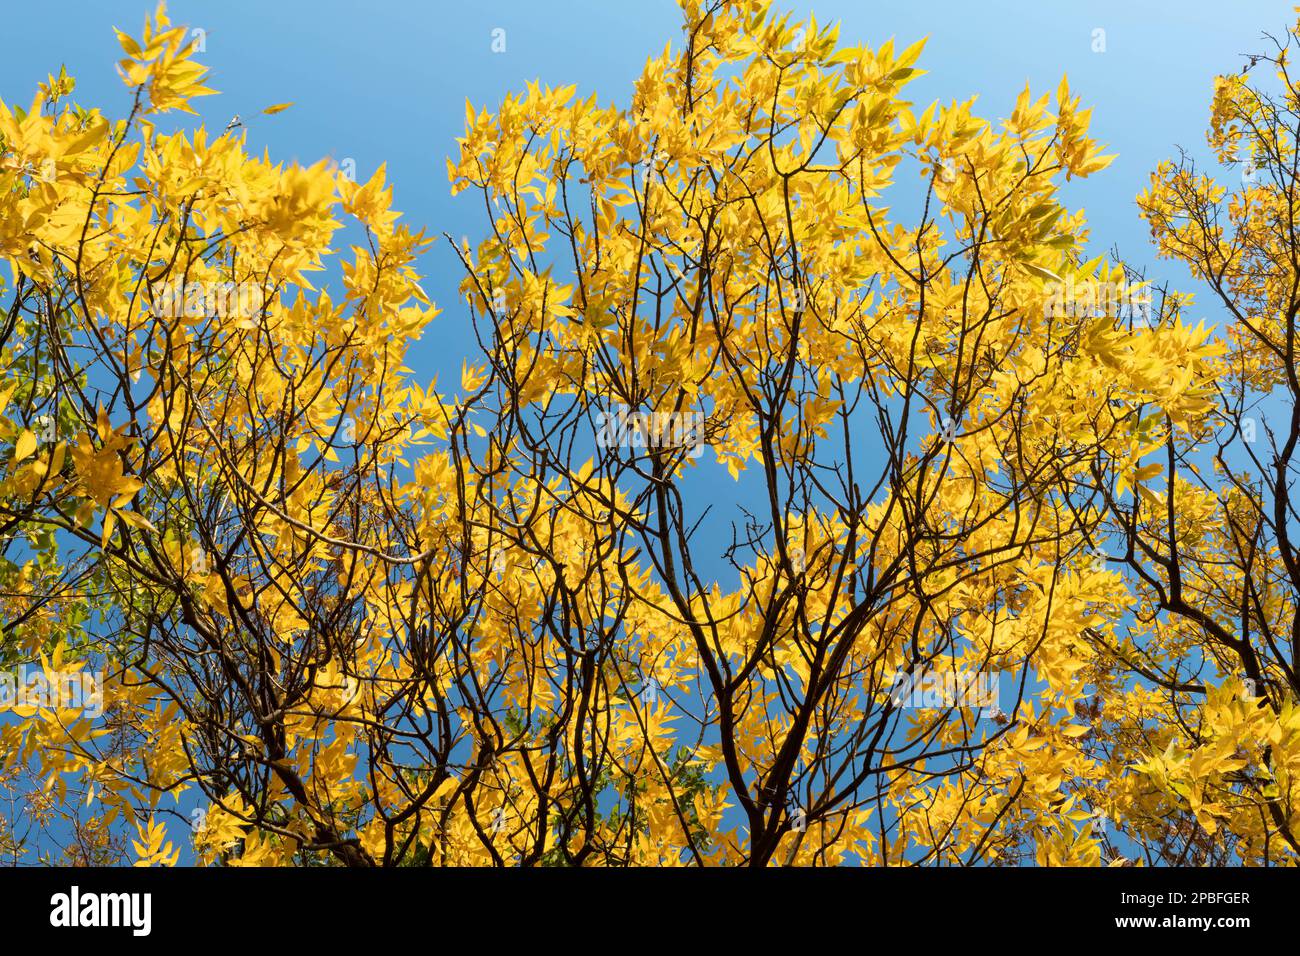 Les feuilles dorées sur les arbres le long du fleuve Mississippi reflètent la lumière du soleil dans le feuillage d'automne Banque D'Images